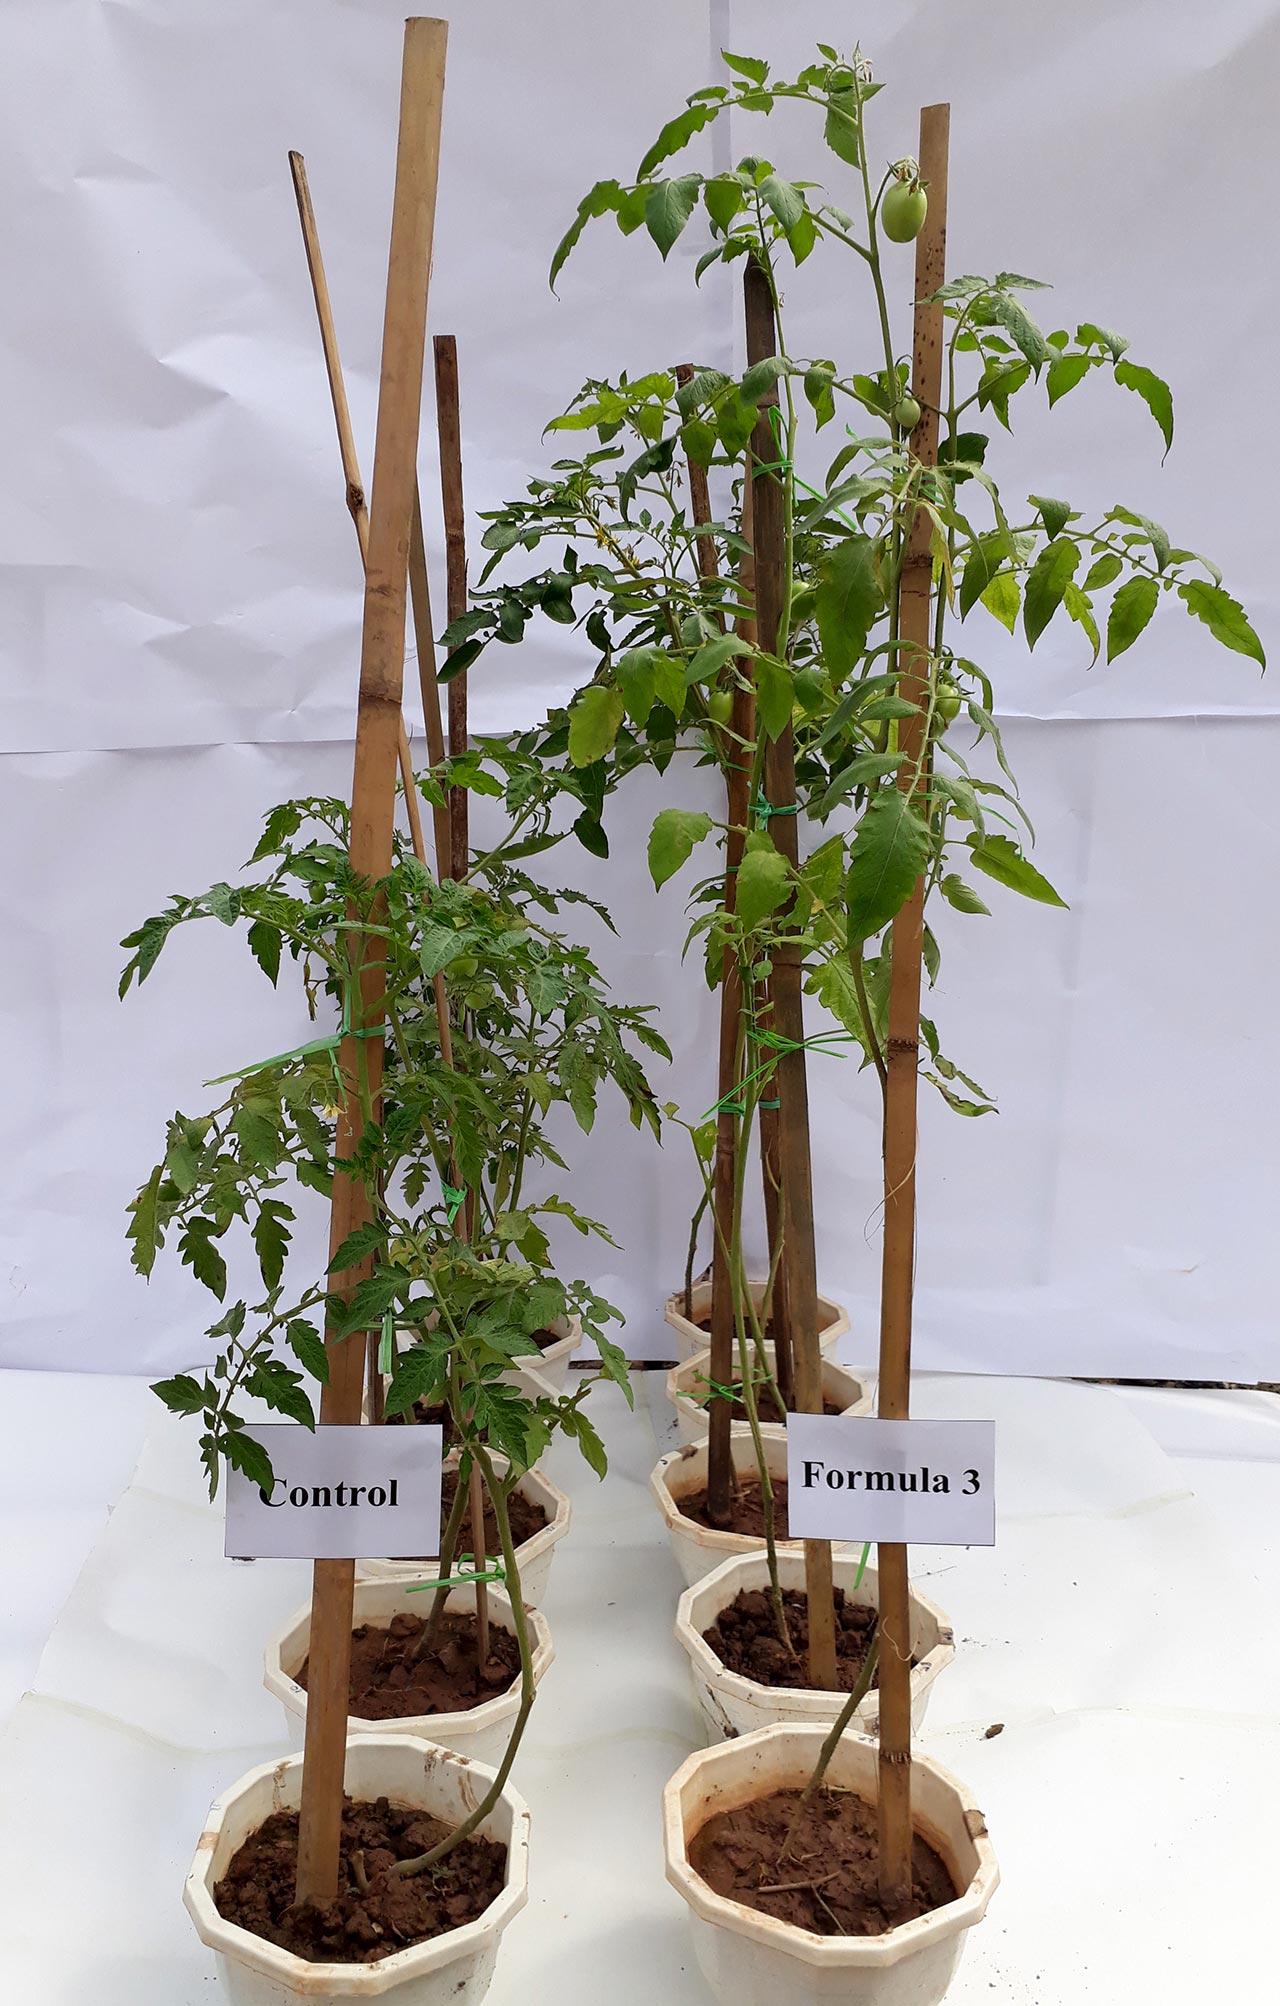 Zwei Reihen eingetopfte Tomatenpflanzen, links eher kleinwüchsig, rechts größer